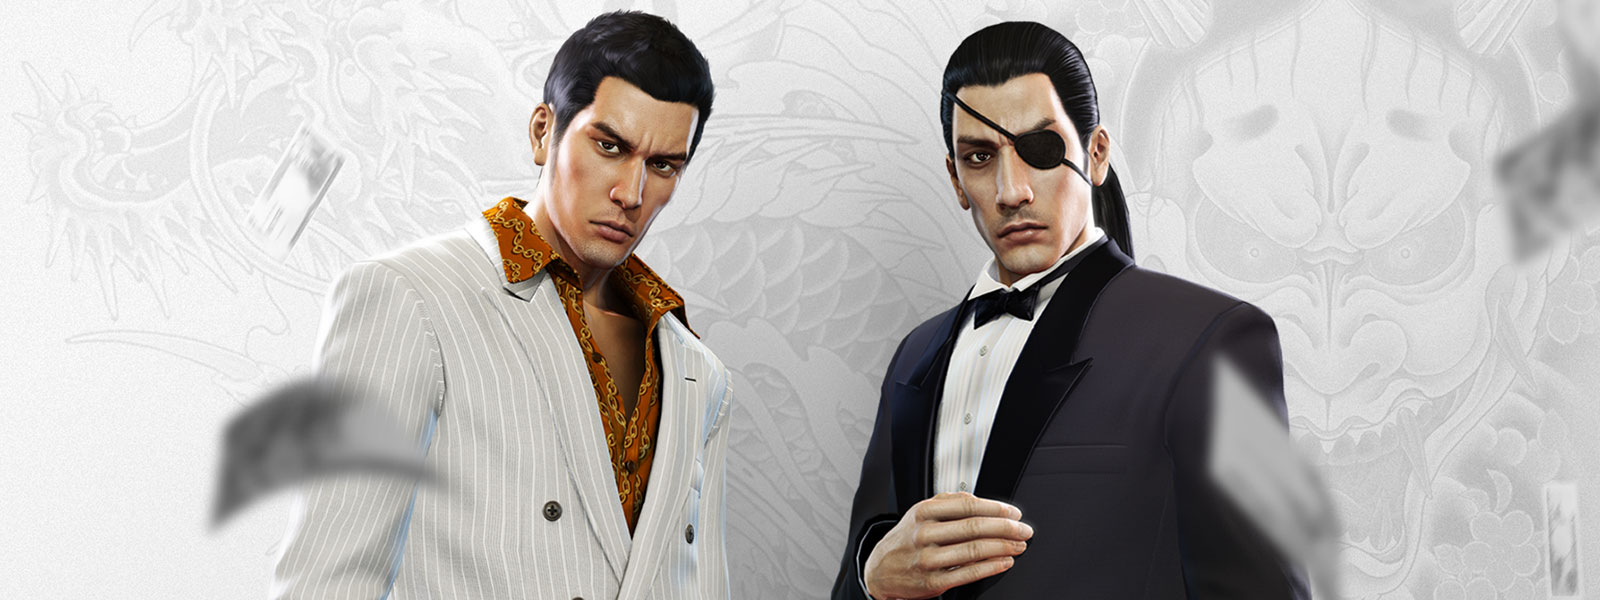 Zwei Yakuza-Figuren in schicken Anzügen staunen über das Geld, das von überall herabfällt. Im Hintergrund ein weißes und graues Drachentattoo